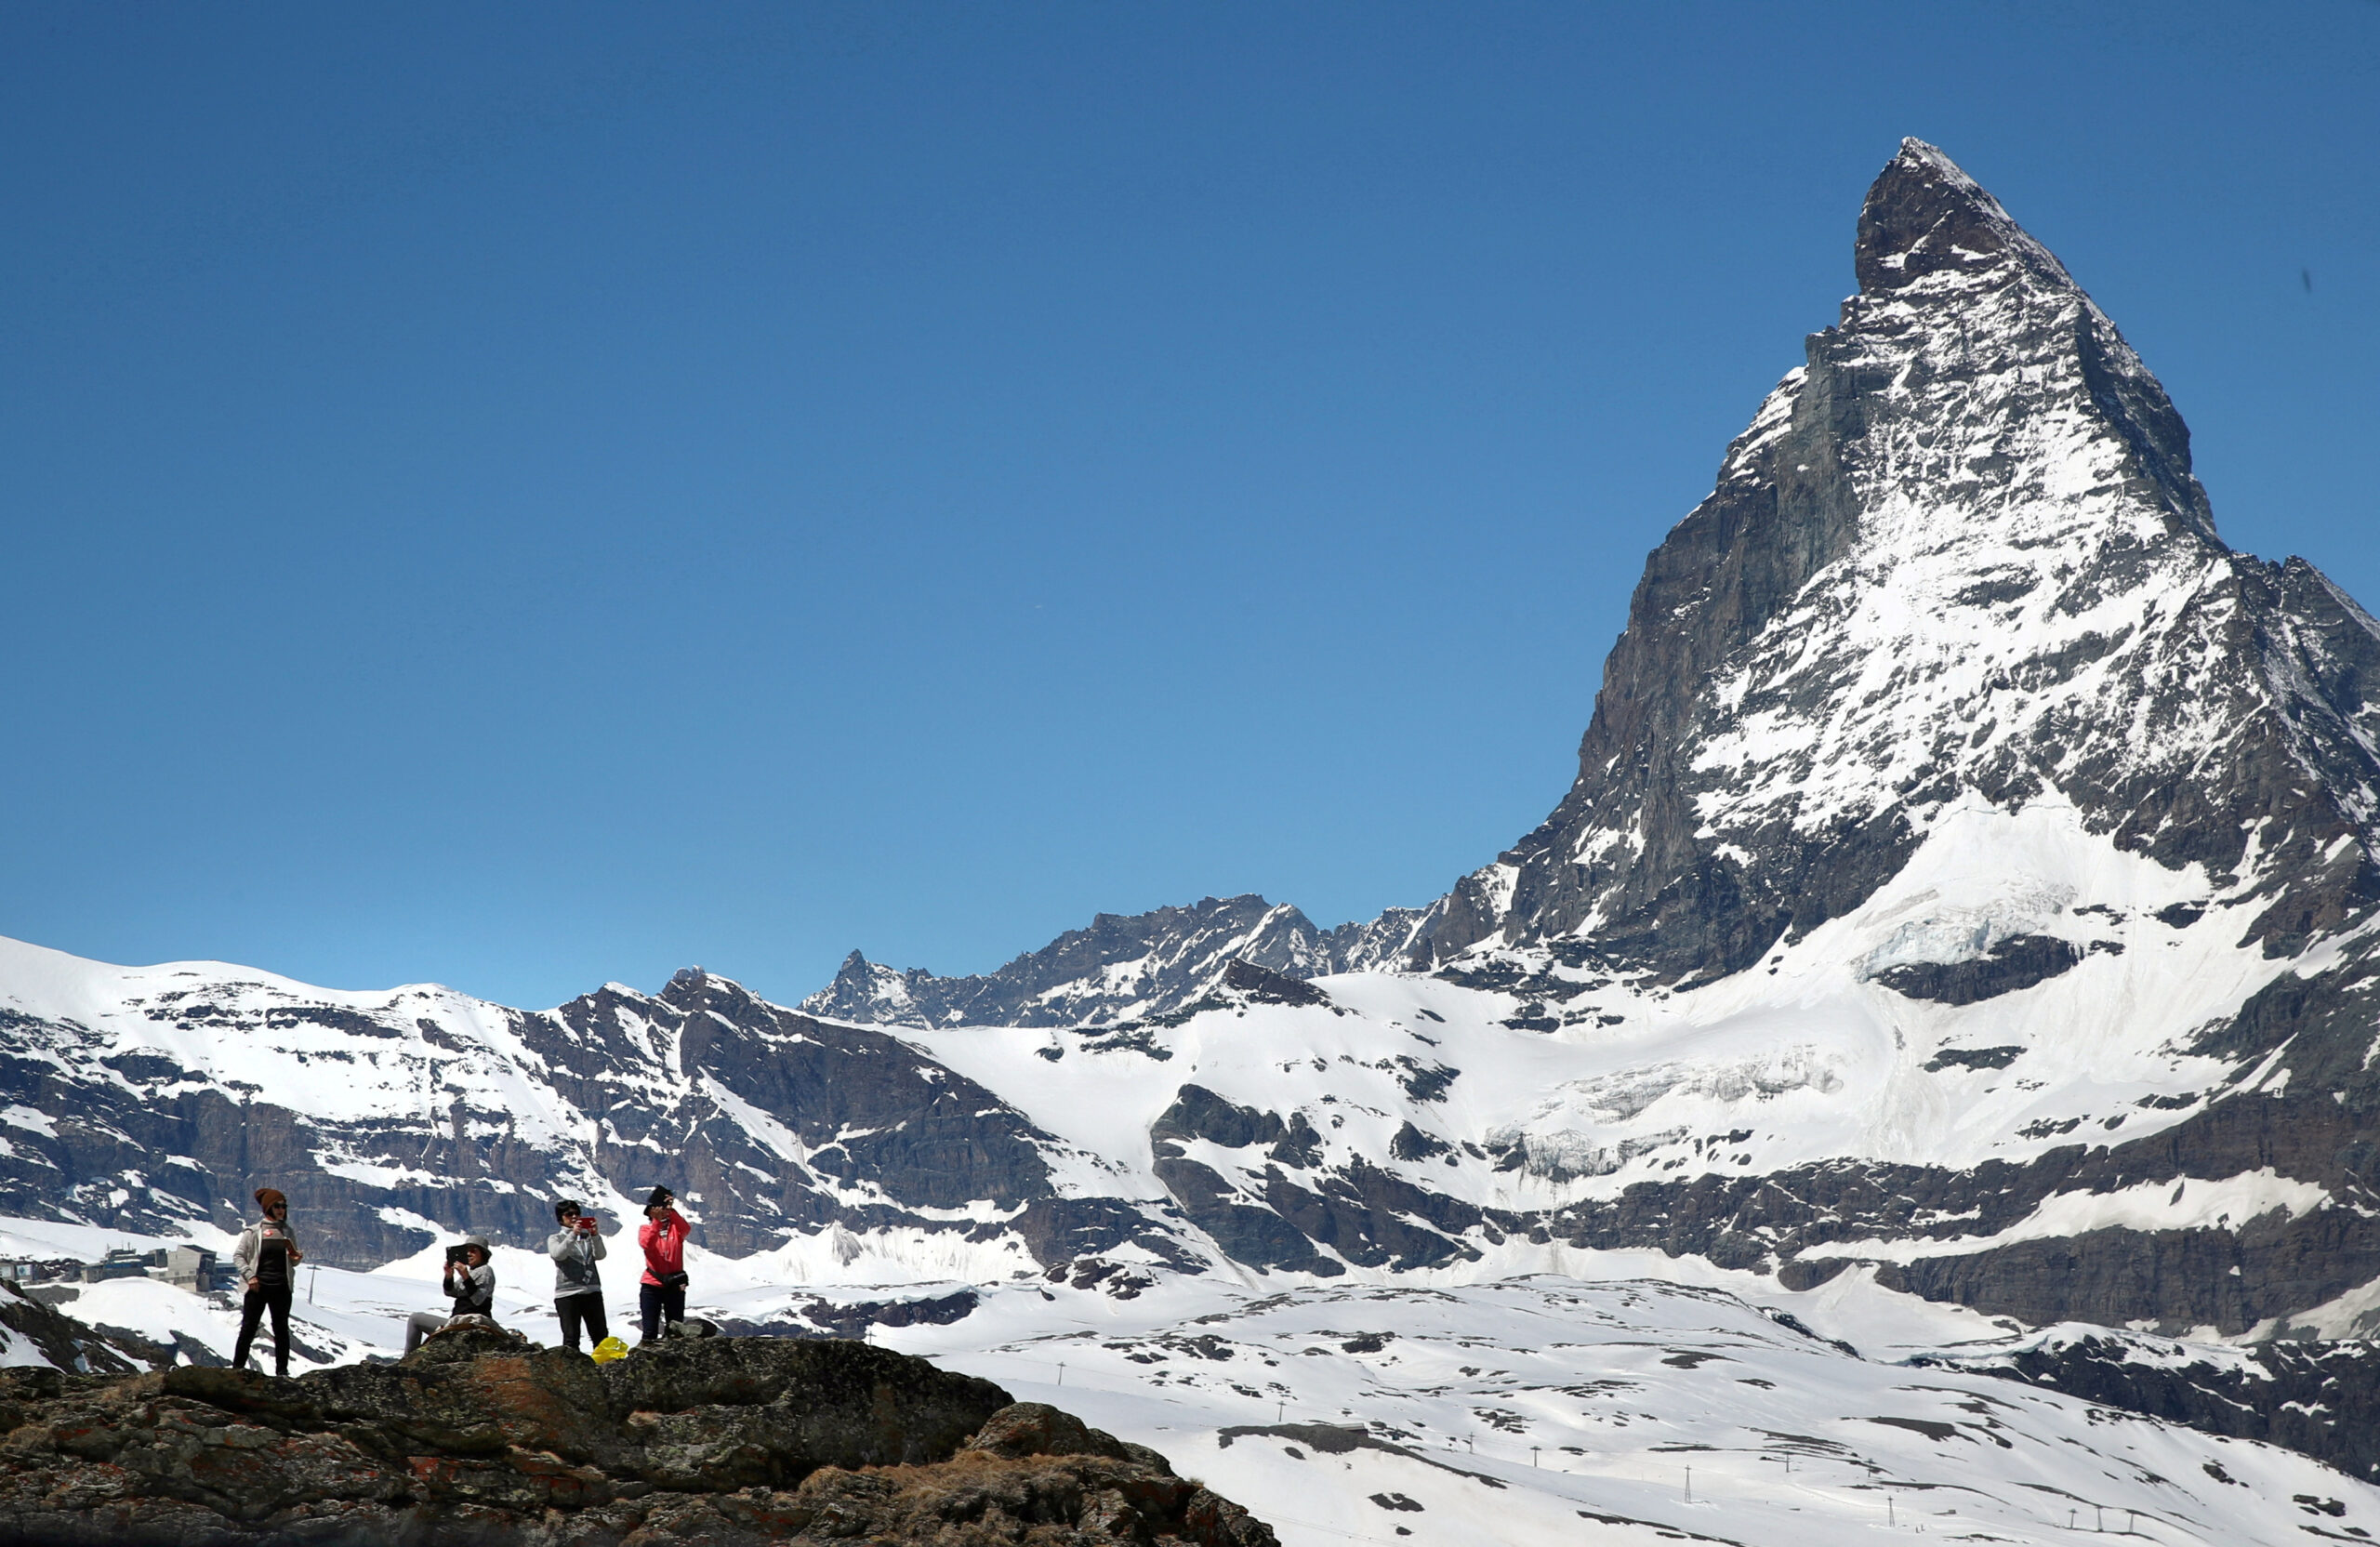 Swiss police search for six missing skiers near Matterhorn